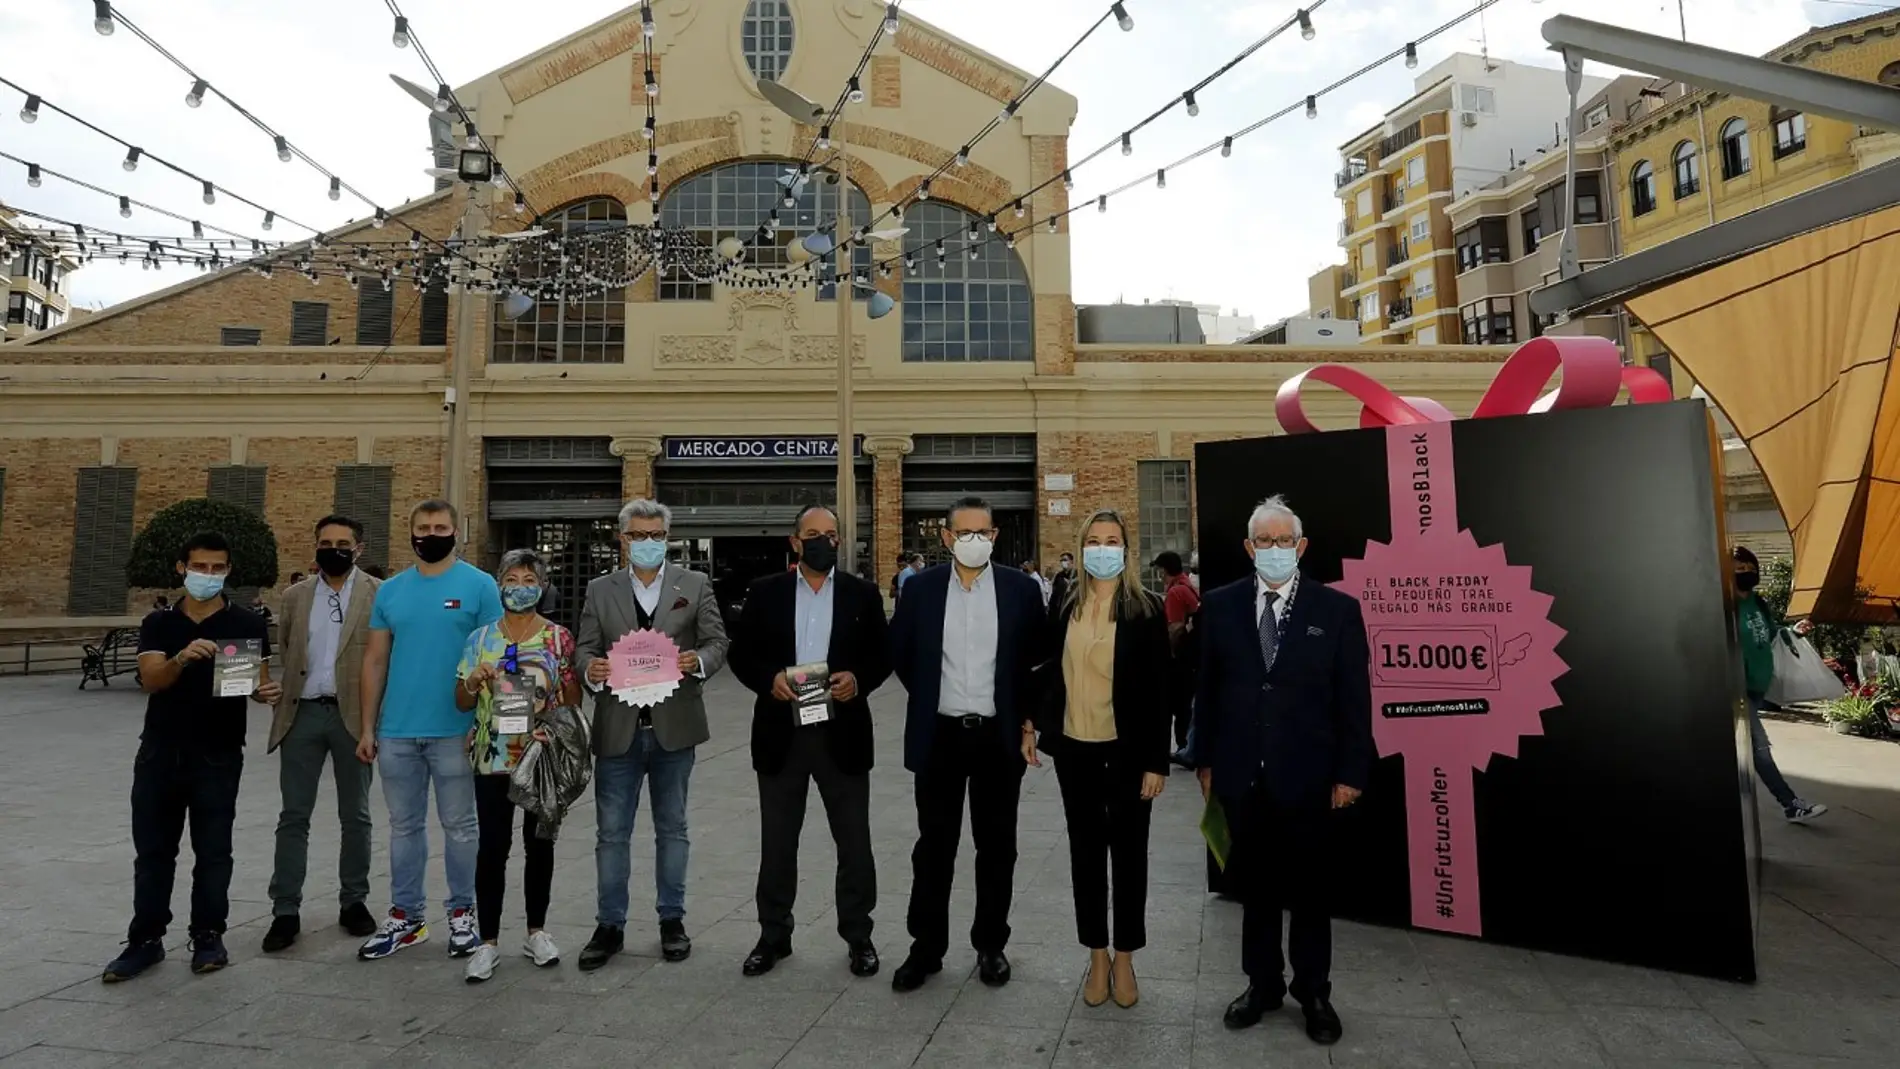 Presentación de la campaña en la Plaza del 25 de mayo de Alicante